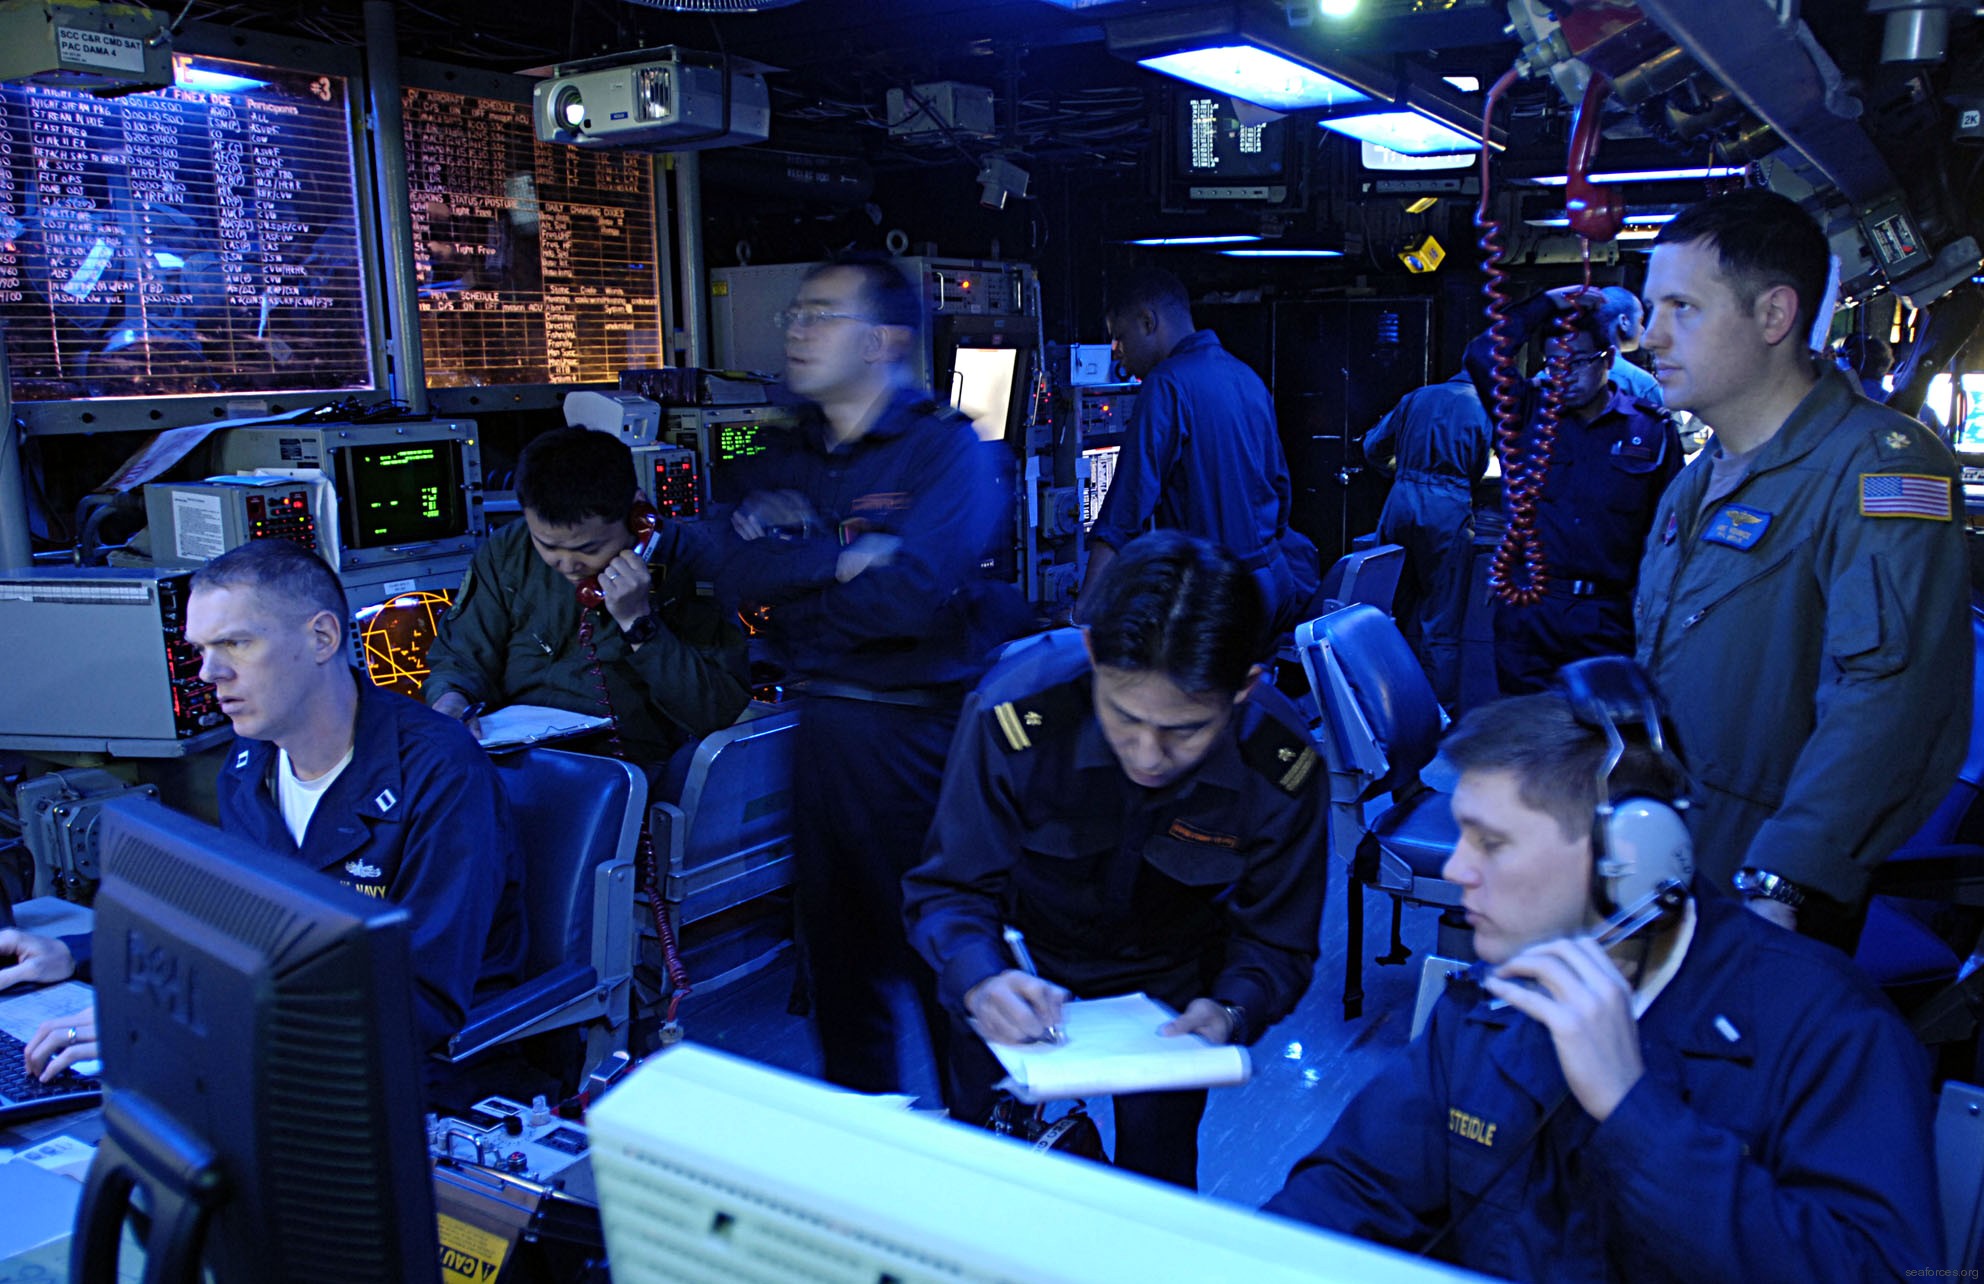 cv-63 uss kitty hawk aircraft carrier us navy 84 combat direction center cdc